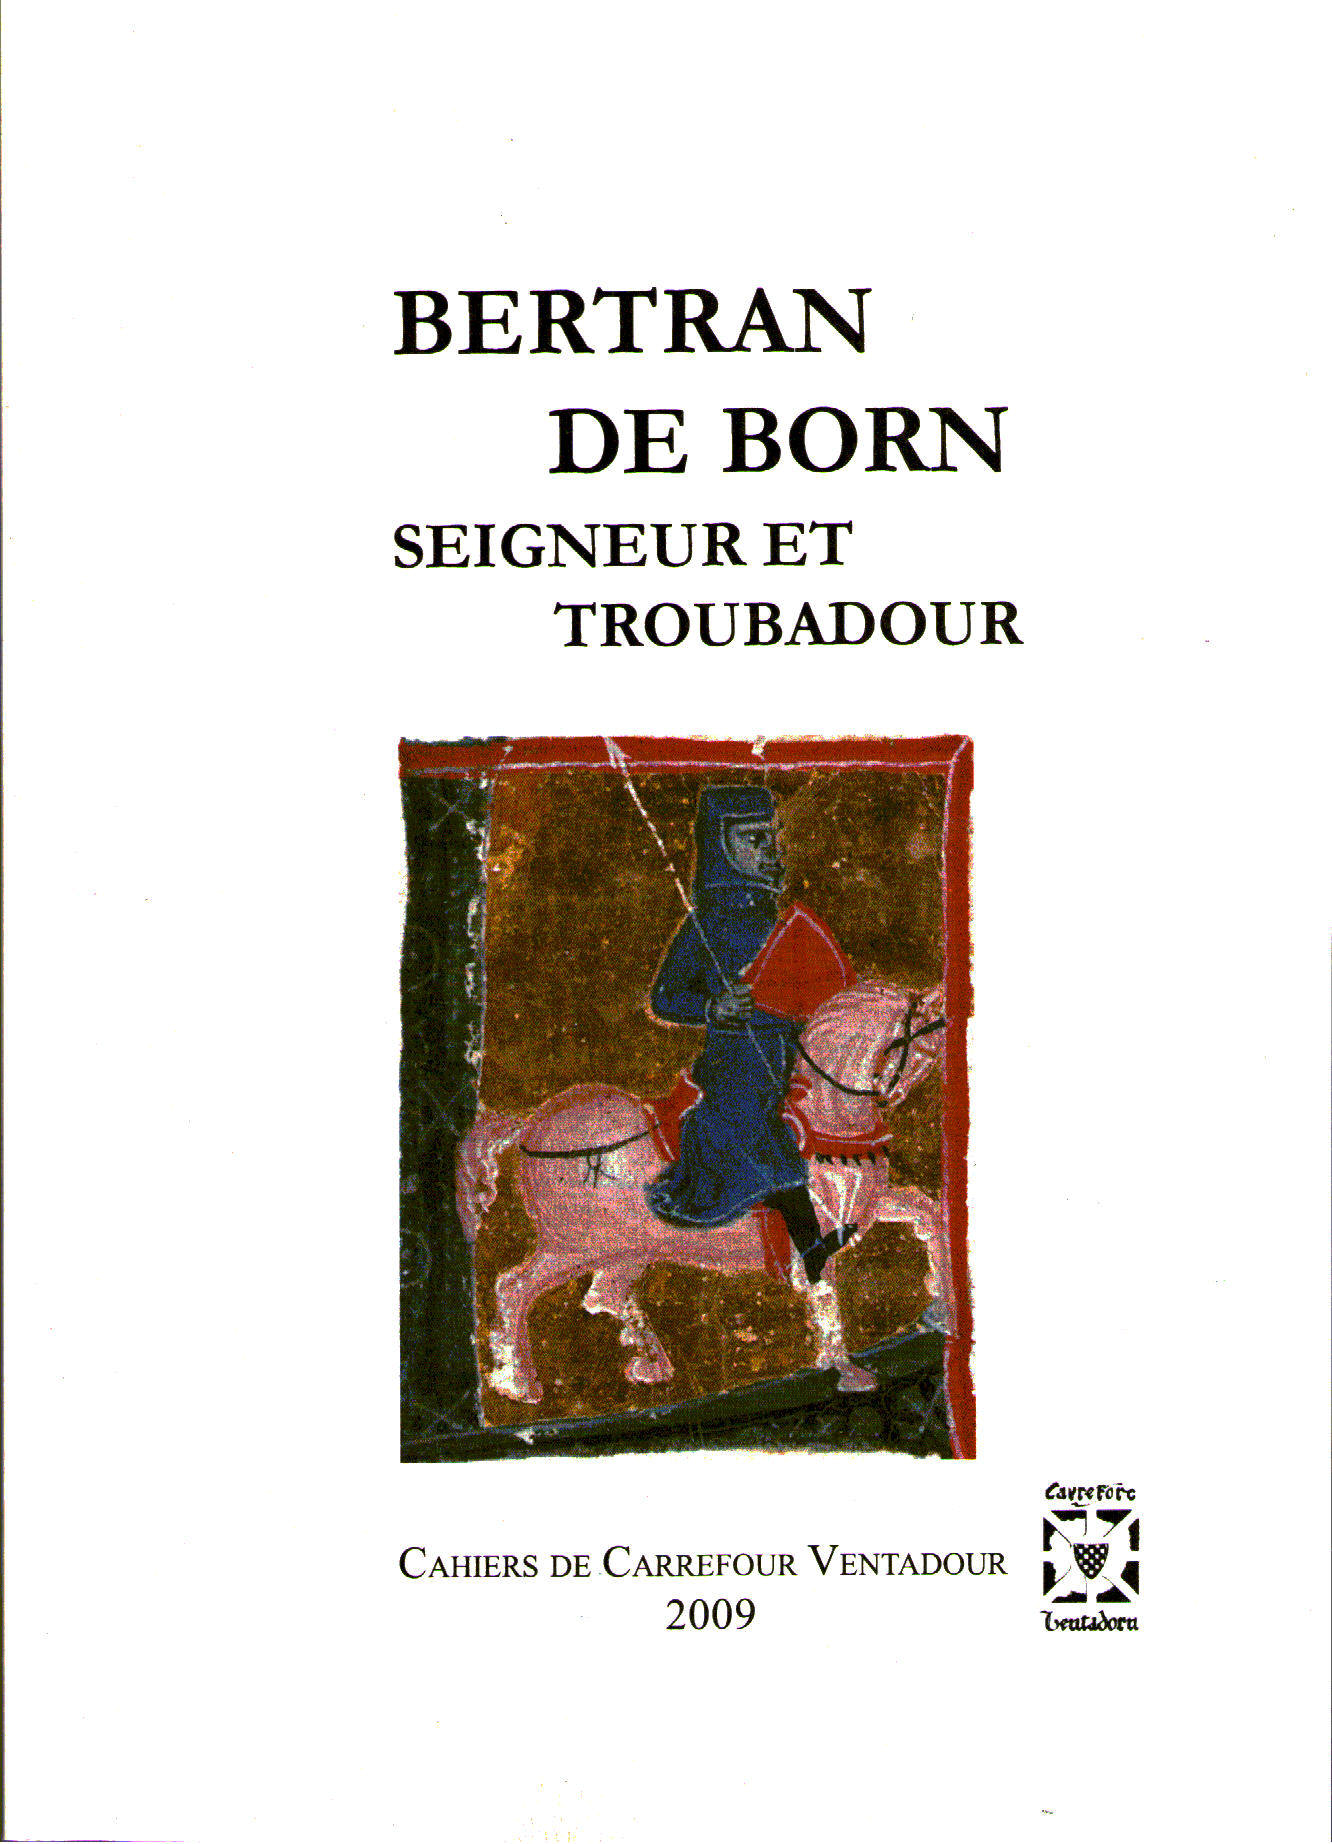 Livre de Bertran de Born seigneur et troubadour page de couverture